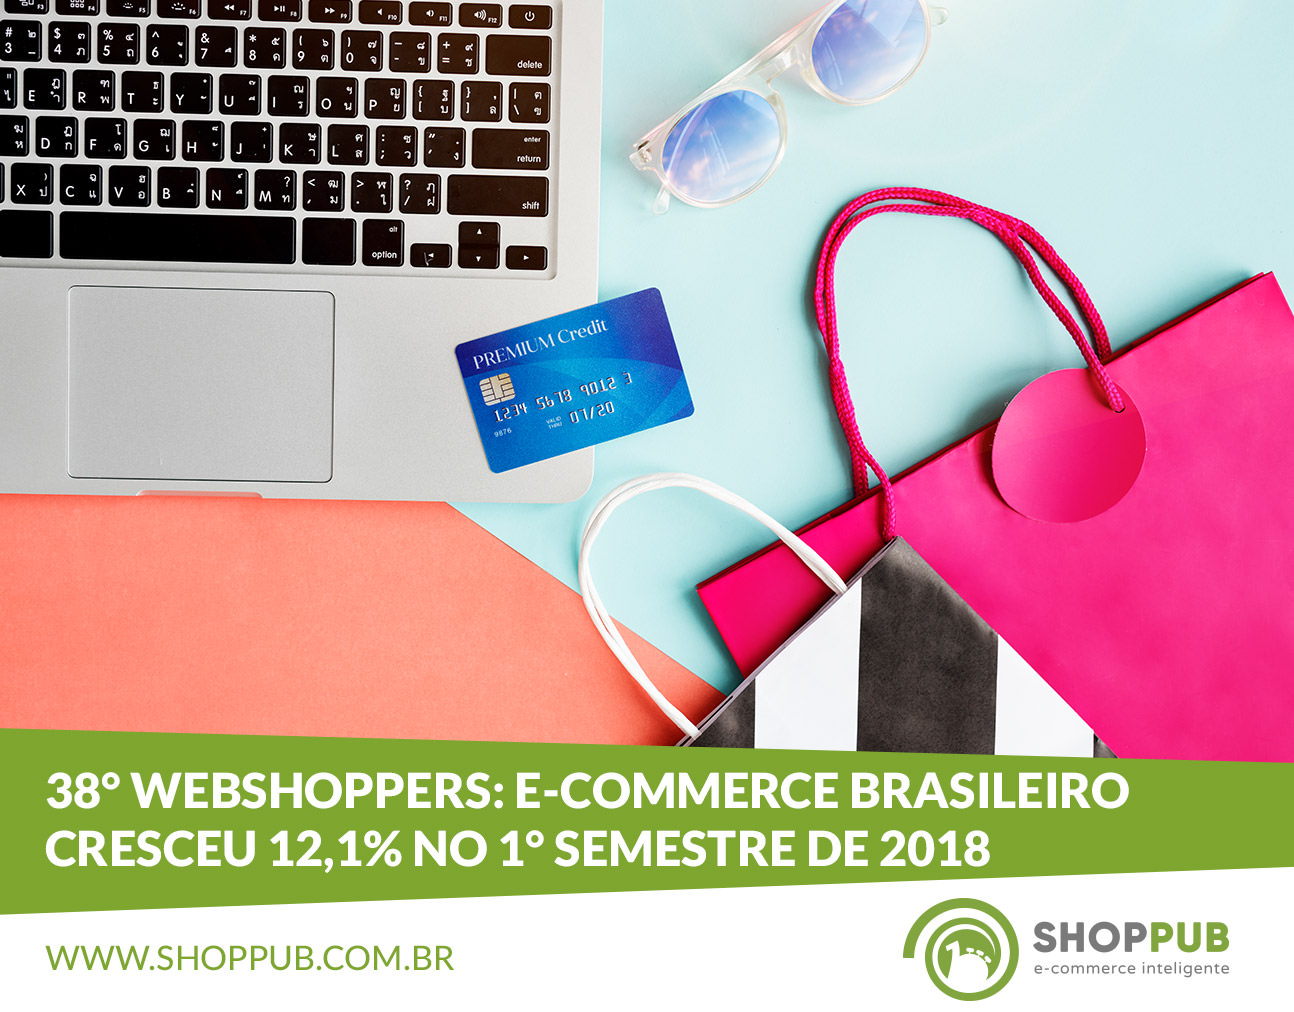 38° Webshoppers: E-commerce brasileiro cresceu 12,1% no 1° semestre de 2018